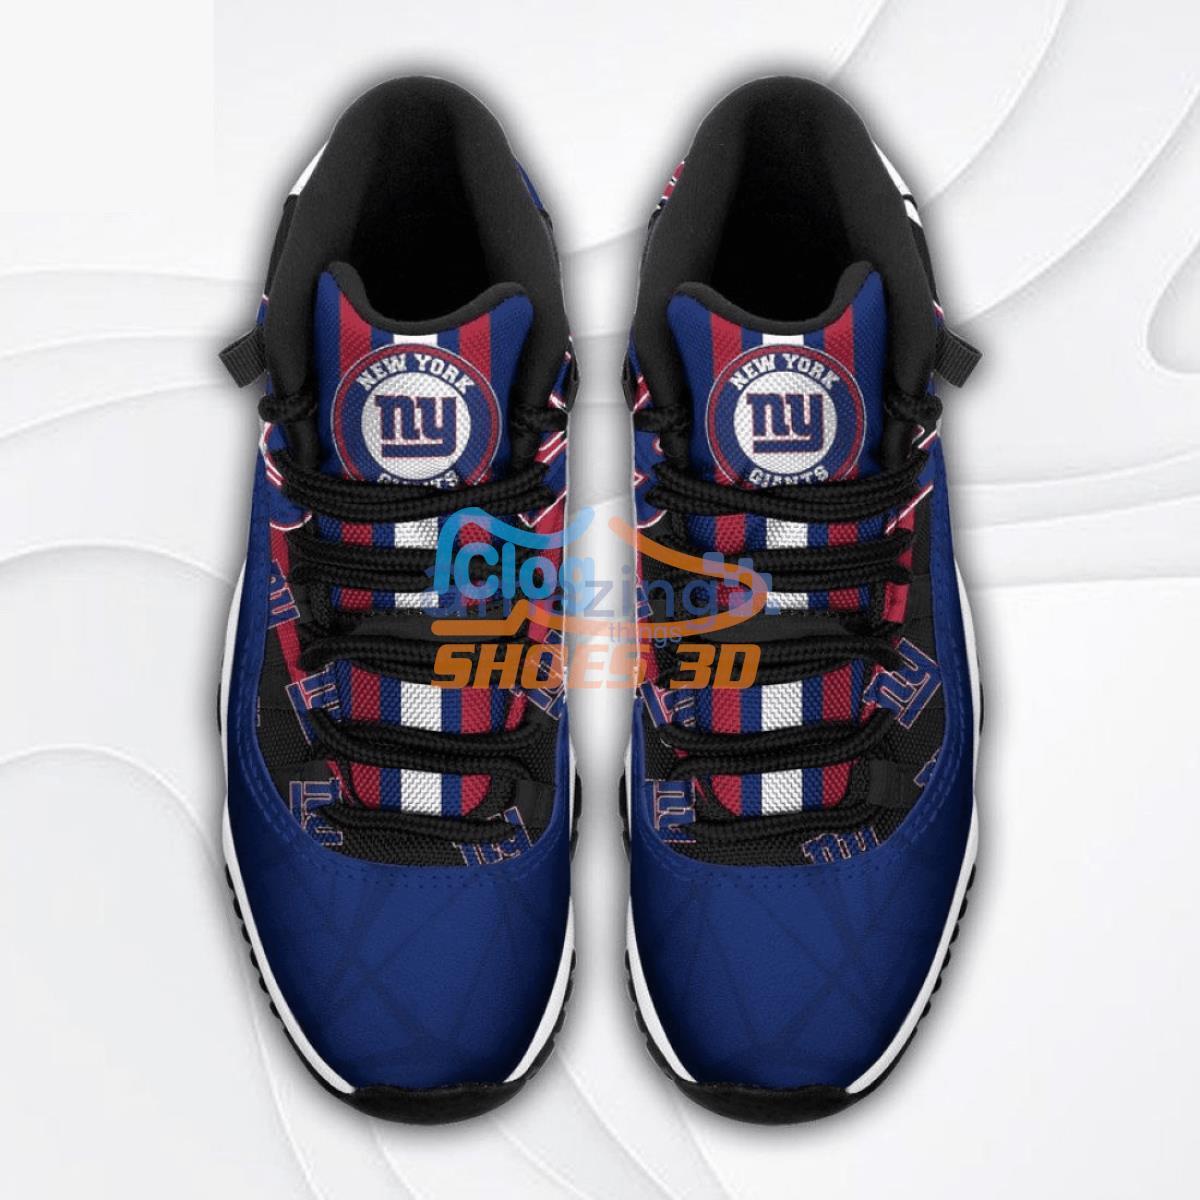 New York Giants NFL Air Jordan 4 Shoes Custom Name - Banantees